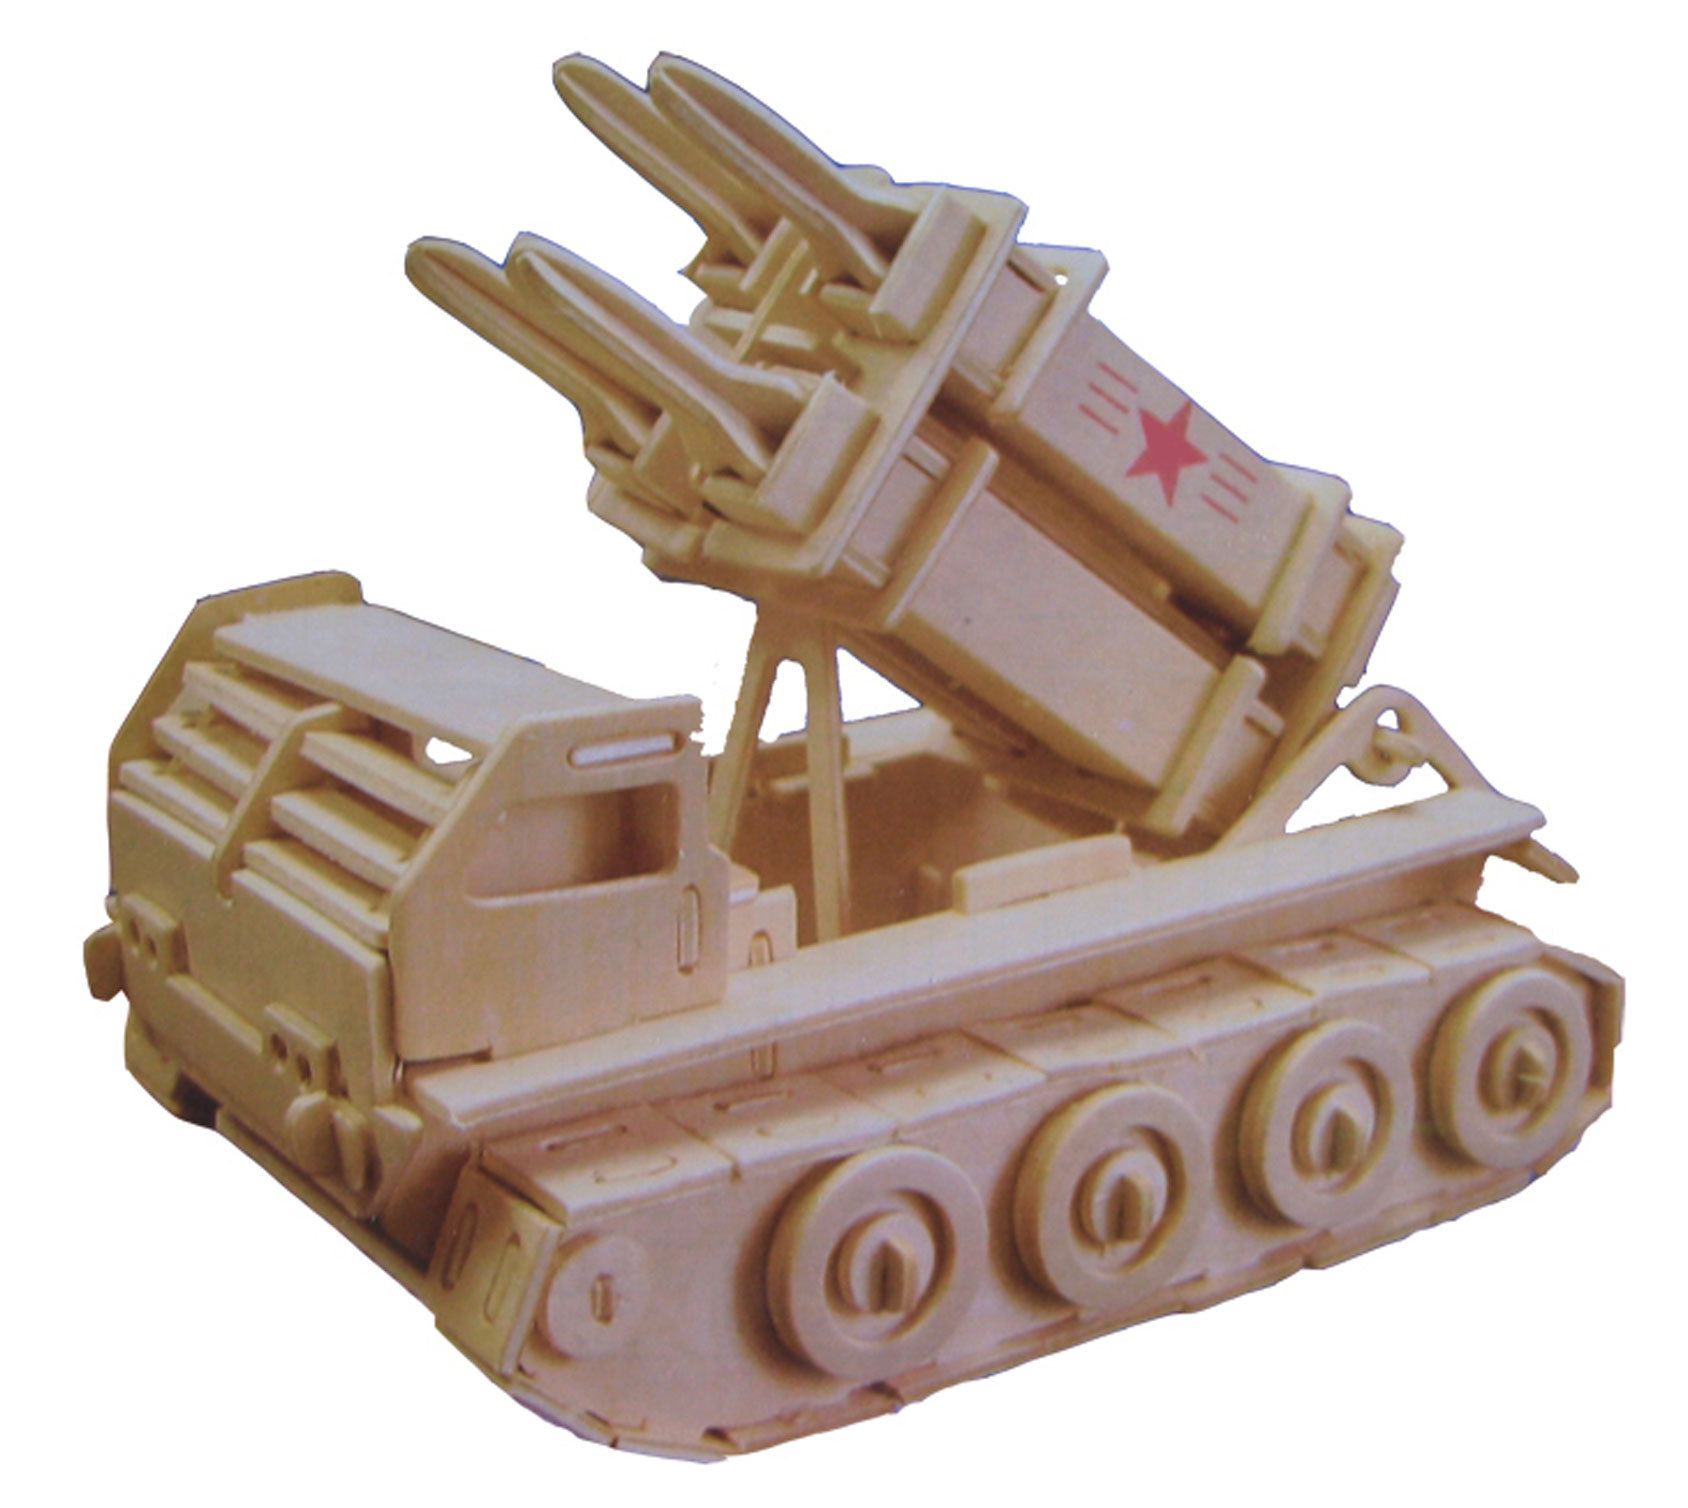 主战坦克 热销diy拼装益智玩具 3d立体木制仿真军事模型玩具坦克